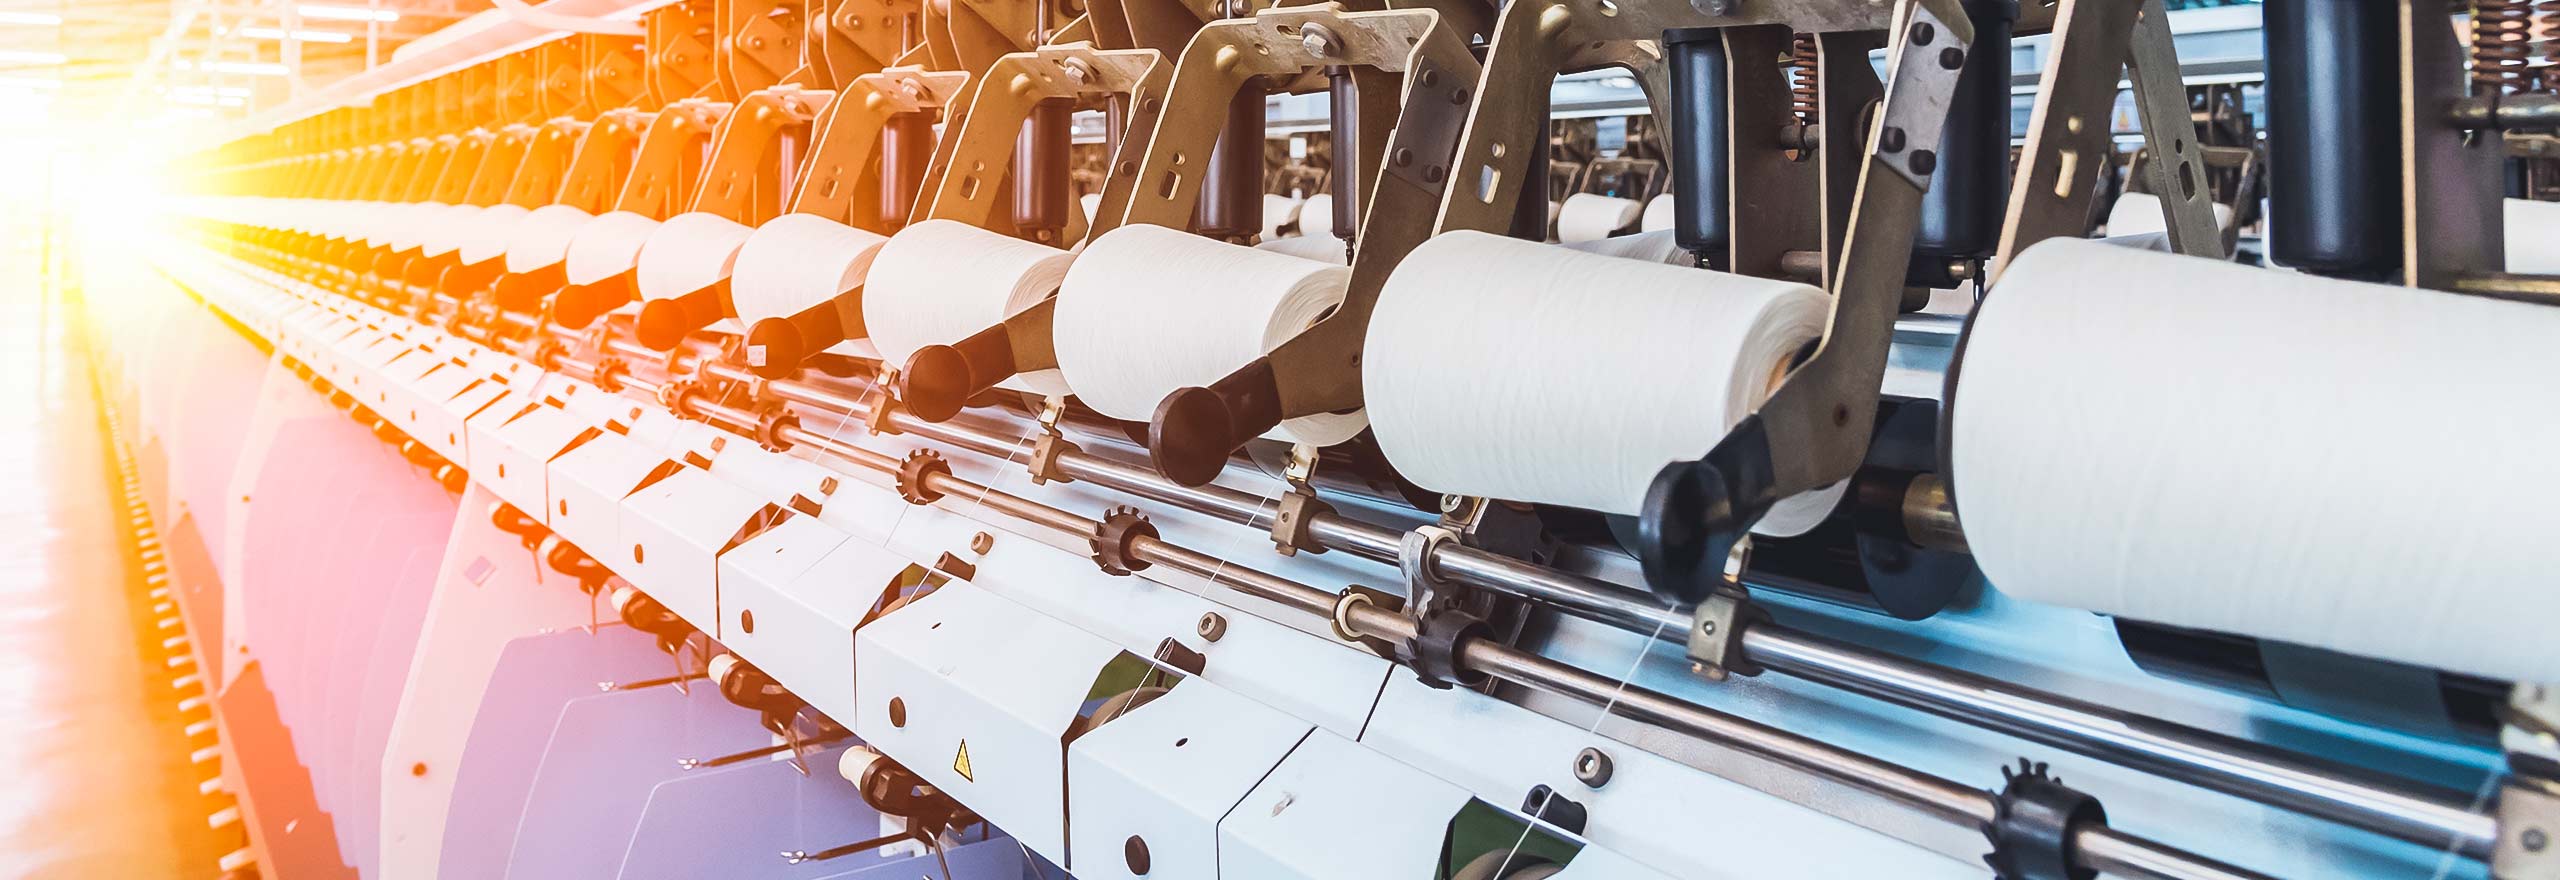 Produzione di asciugamani di carta presso lo stabilimento di produzione